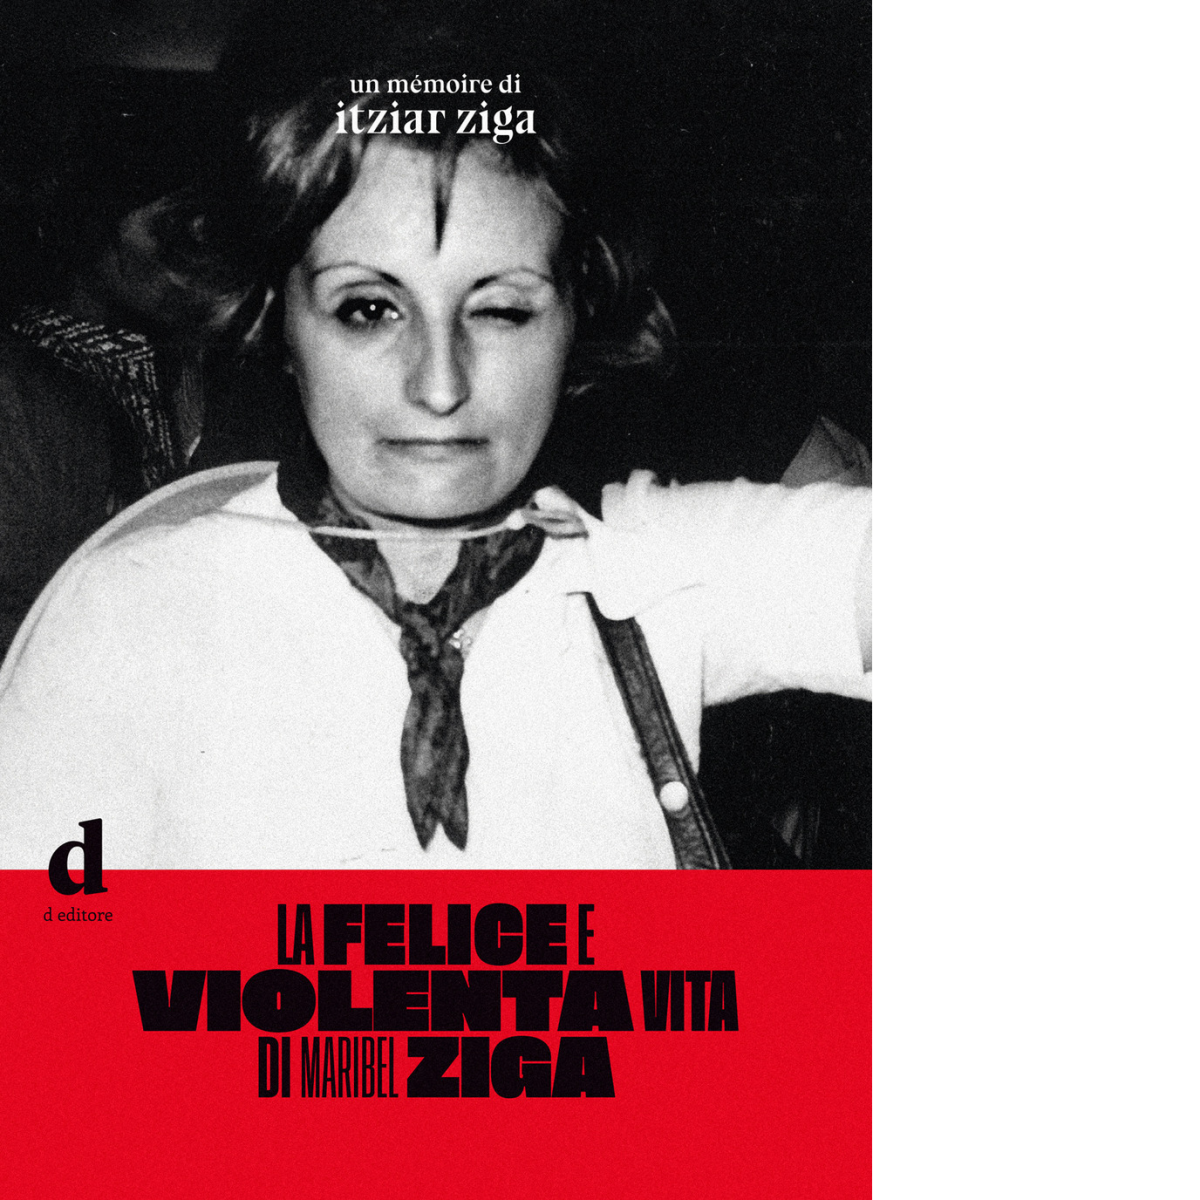 La felice e violenta vita di Maribel Ziga di Itziar Ziga - D Editore, 2021